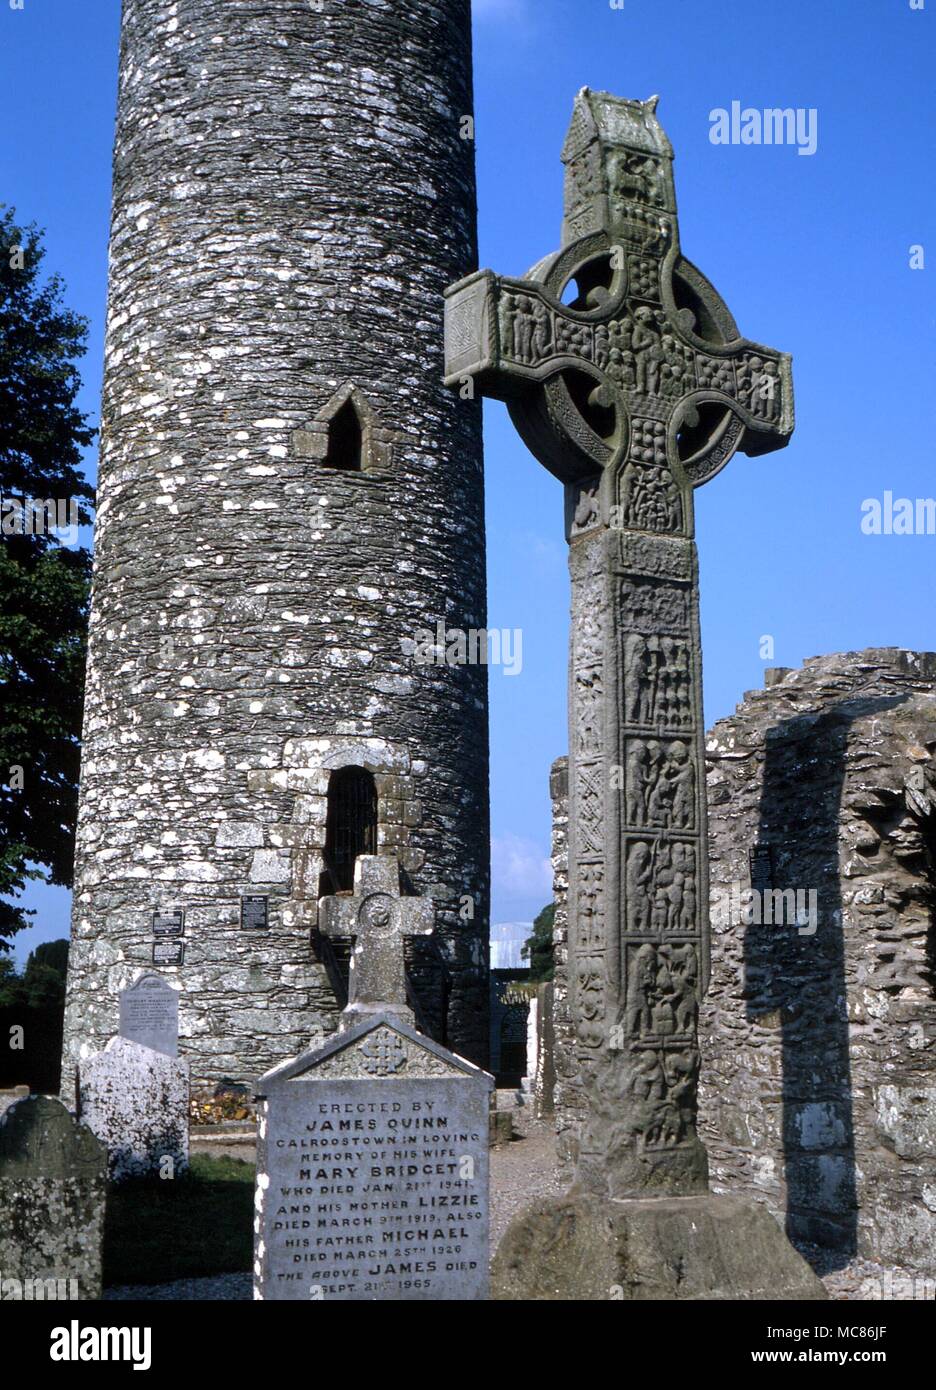 CELTIC im 10. Jahrhundert der 'Westen' von Monasterboice, mit dem runden Turm im Hintergrund. Das Kreuz ist 7 Meter hoch. Das Thema des zentralen Chef ist Christus als Symbol der Kirche militanten Stockfoto